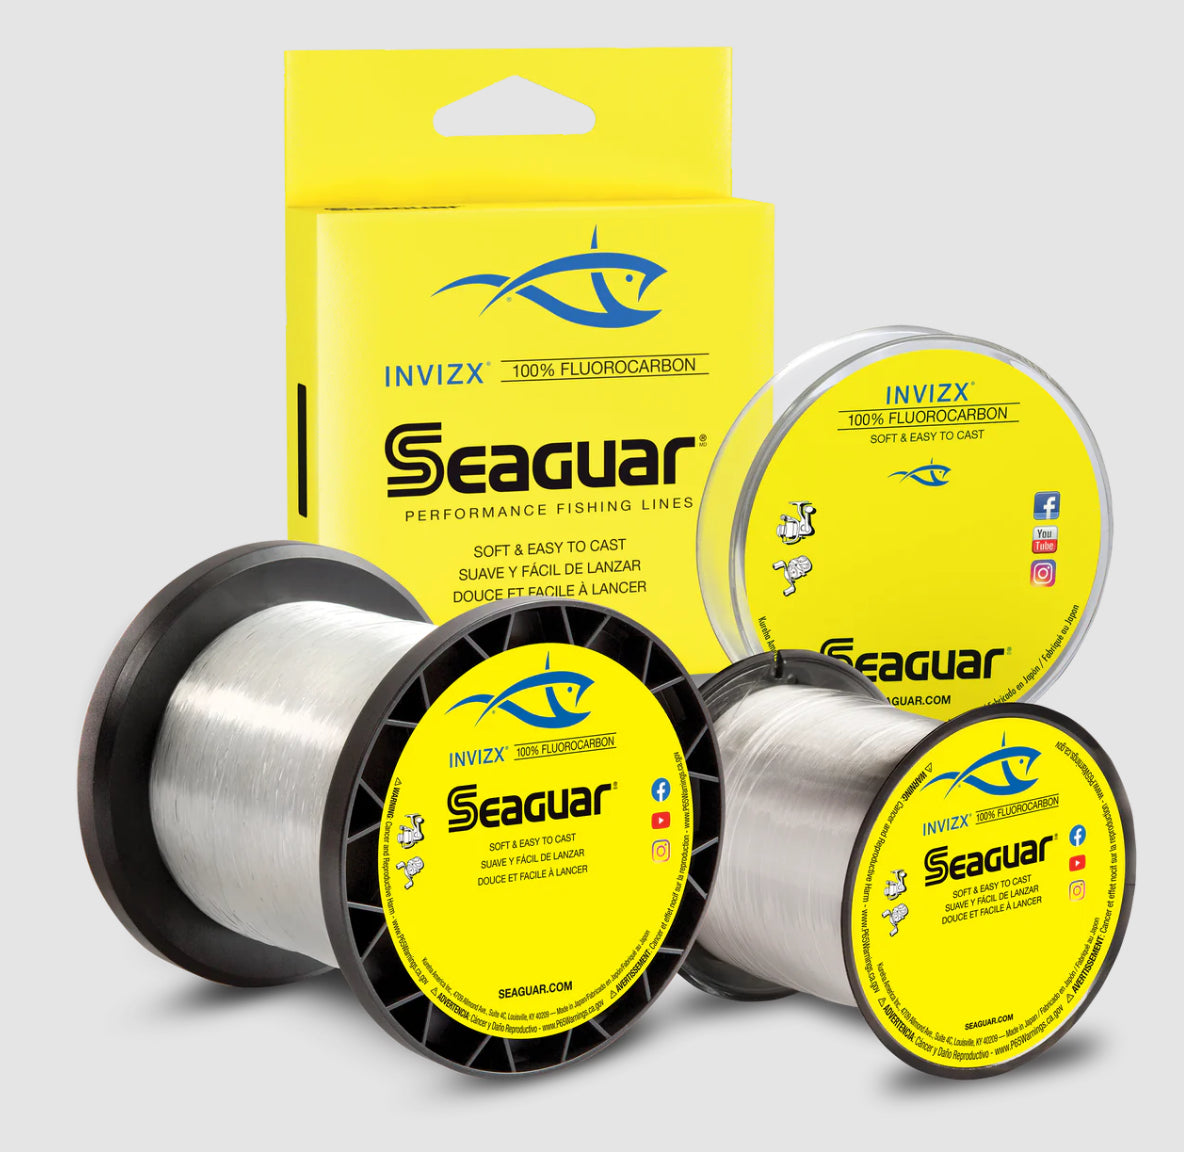 Seaguar INVIZX Fluorocarbon Line